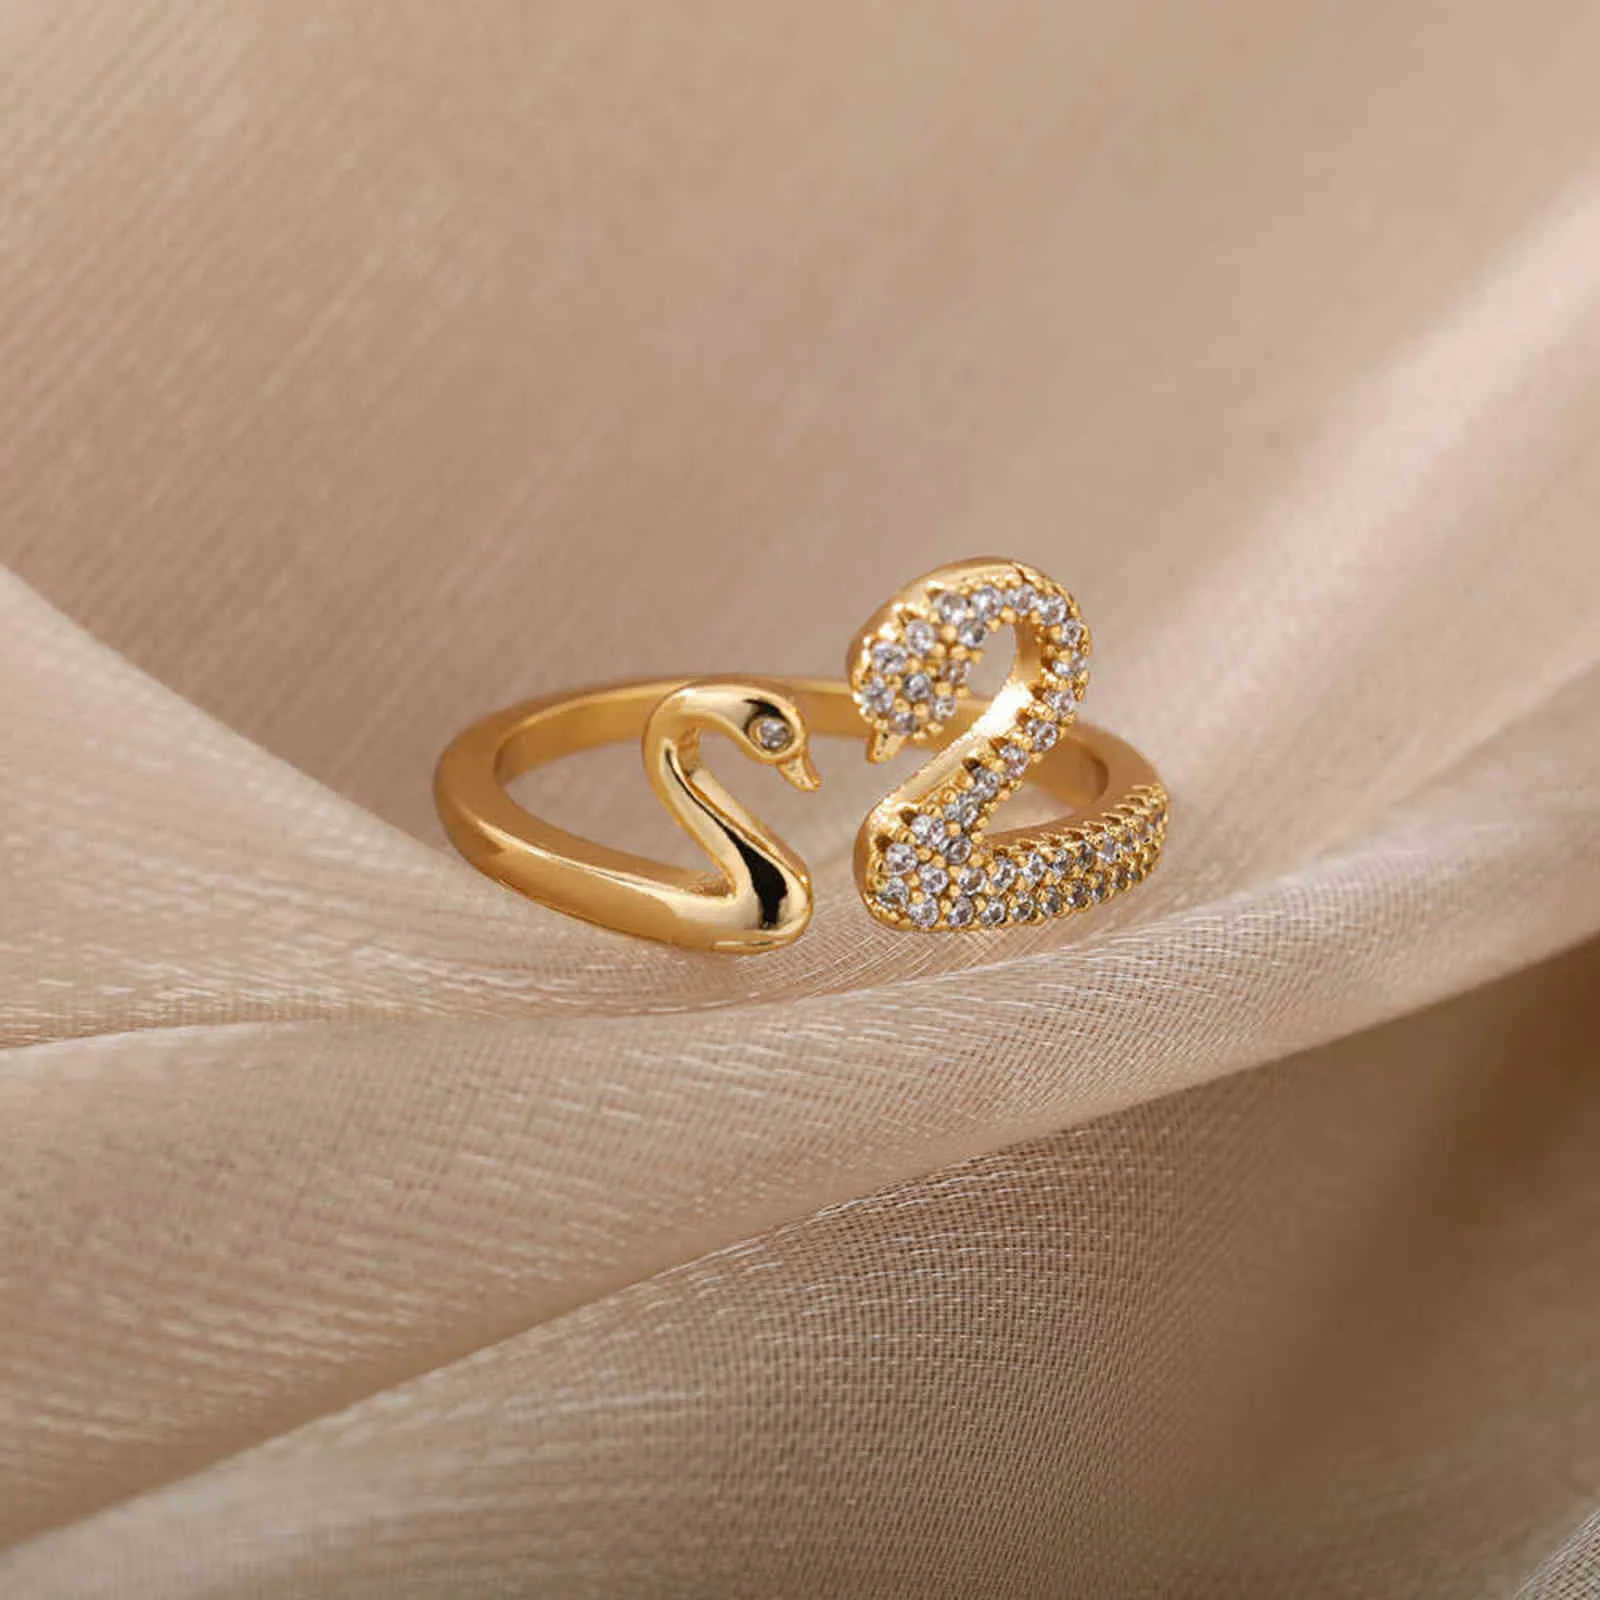 Romantisch kijken naar elkaar Swan Ringen voor vrouwen Gold Sliver Color Love Openning Paar Ringen Bruiloft Engagement Sieraden Gift G1125